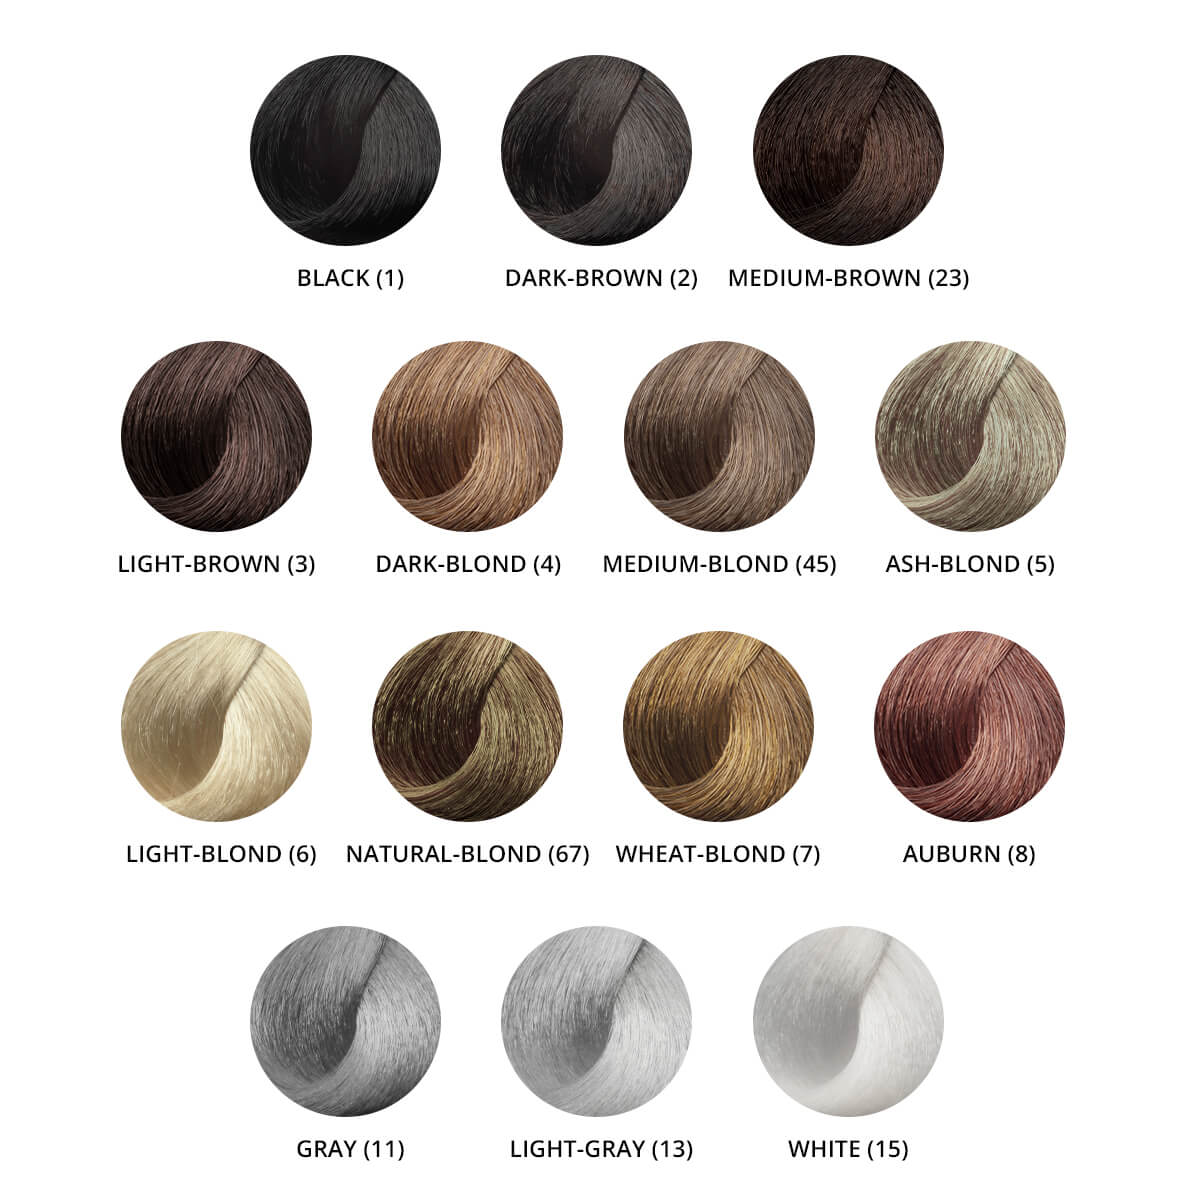 Streuhaare in Blond, Braun und Rot: Unterschiedliche Farben ohne Verblassen